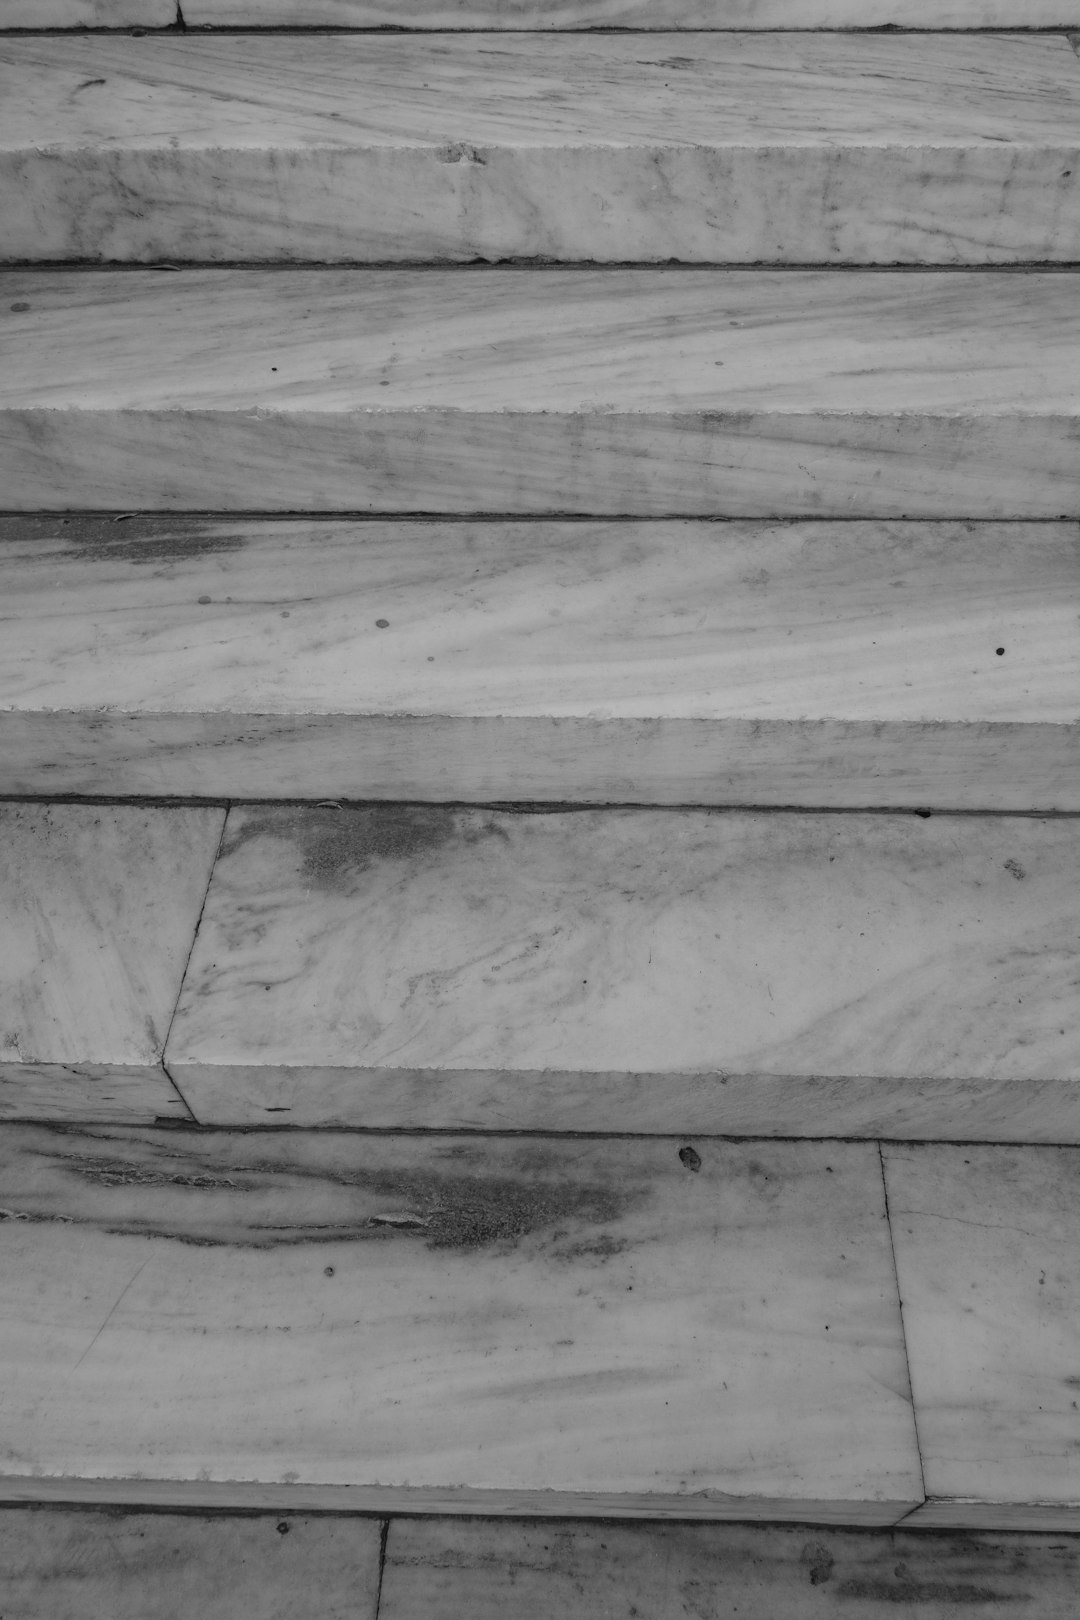 grayscale photo of wooden floor